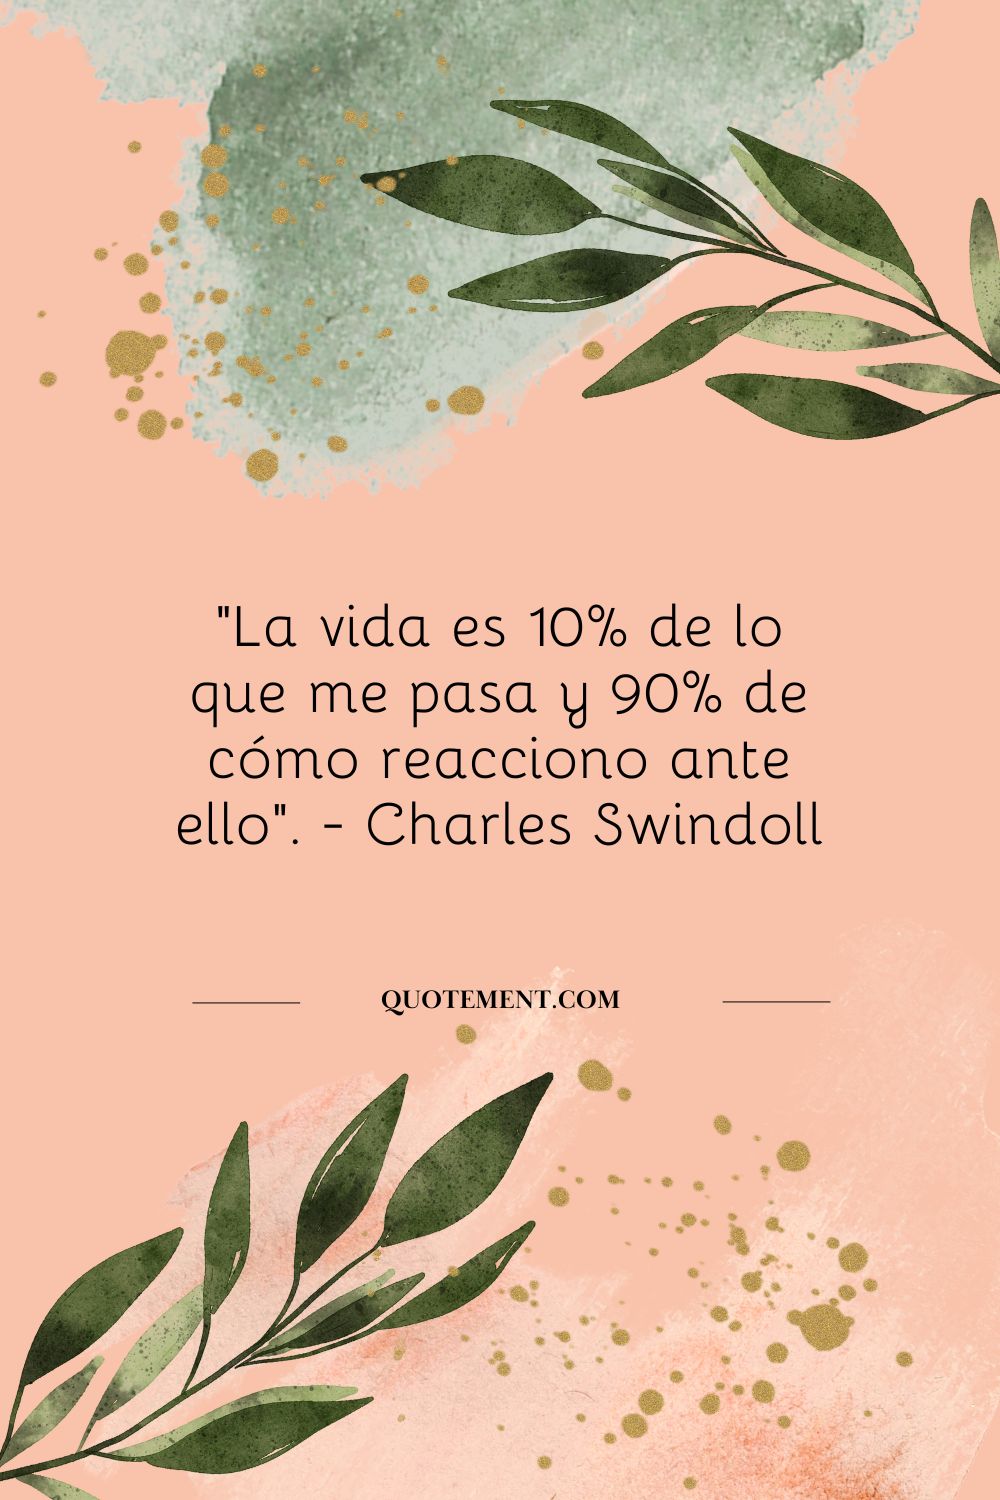 "La vida es 10% de lo que me pasa y 90% de cómo reacciono ante ello". - Charles Swindoll